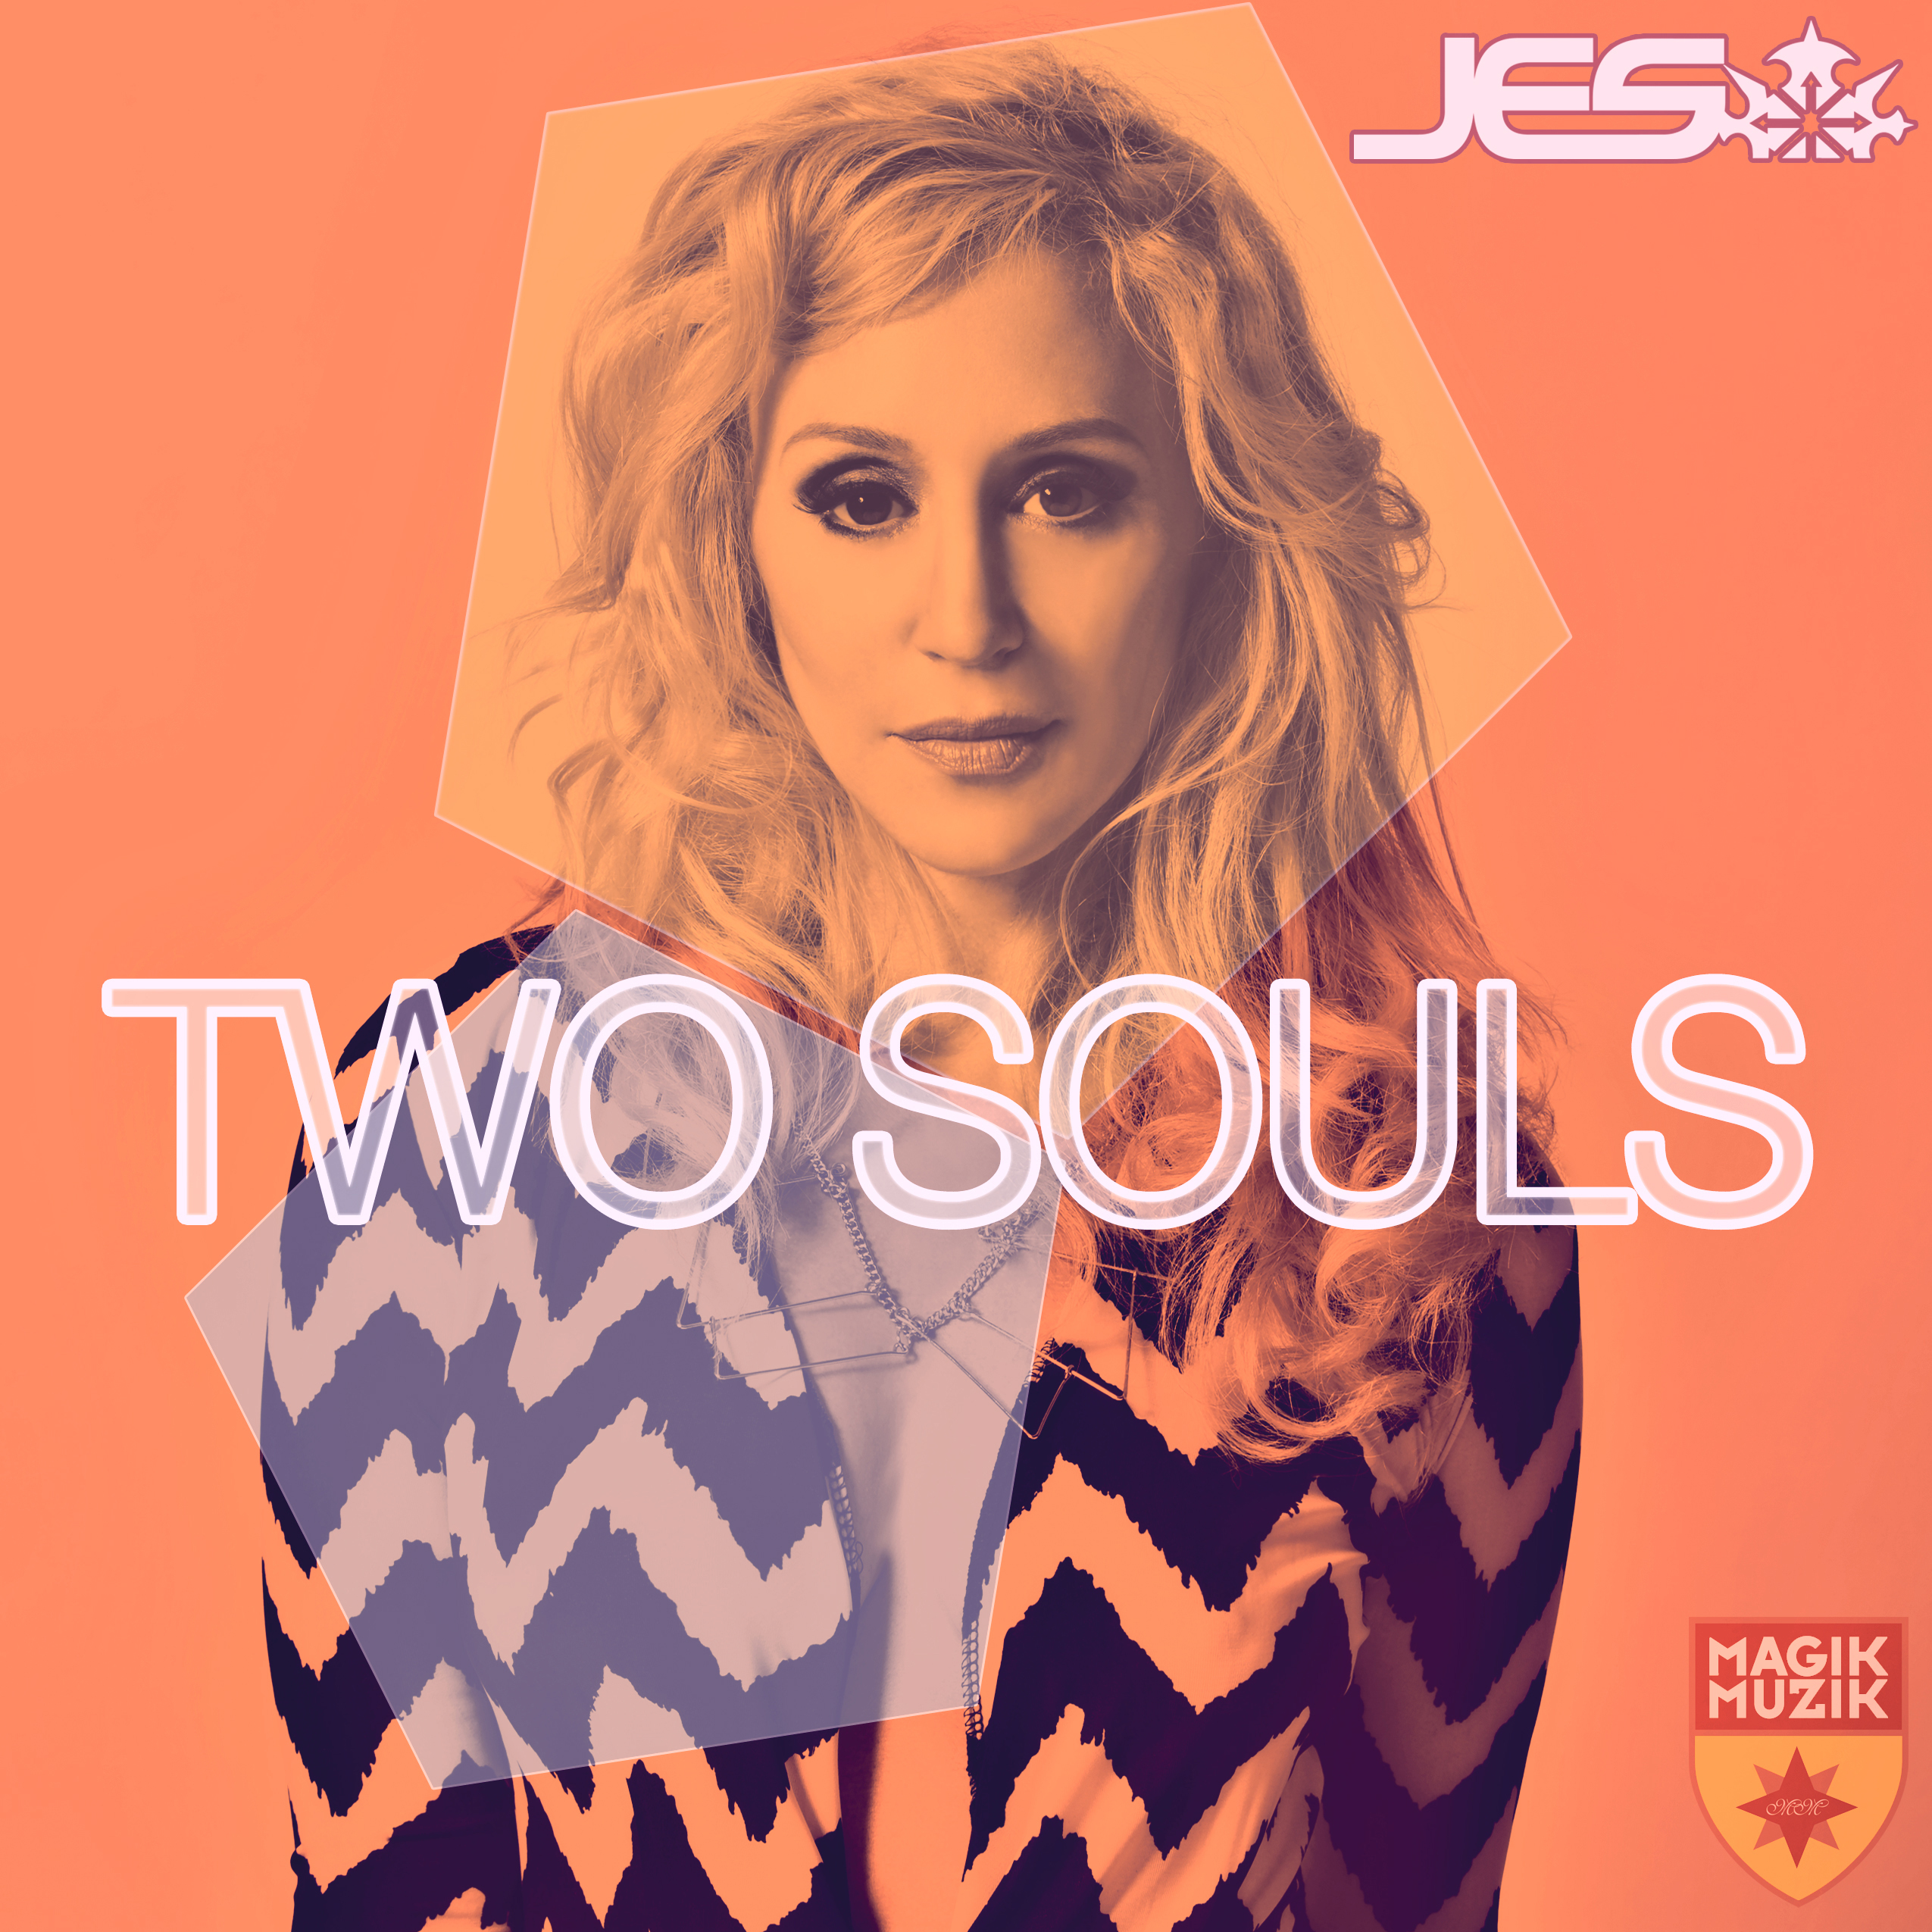 Two Souls (Original Mix)